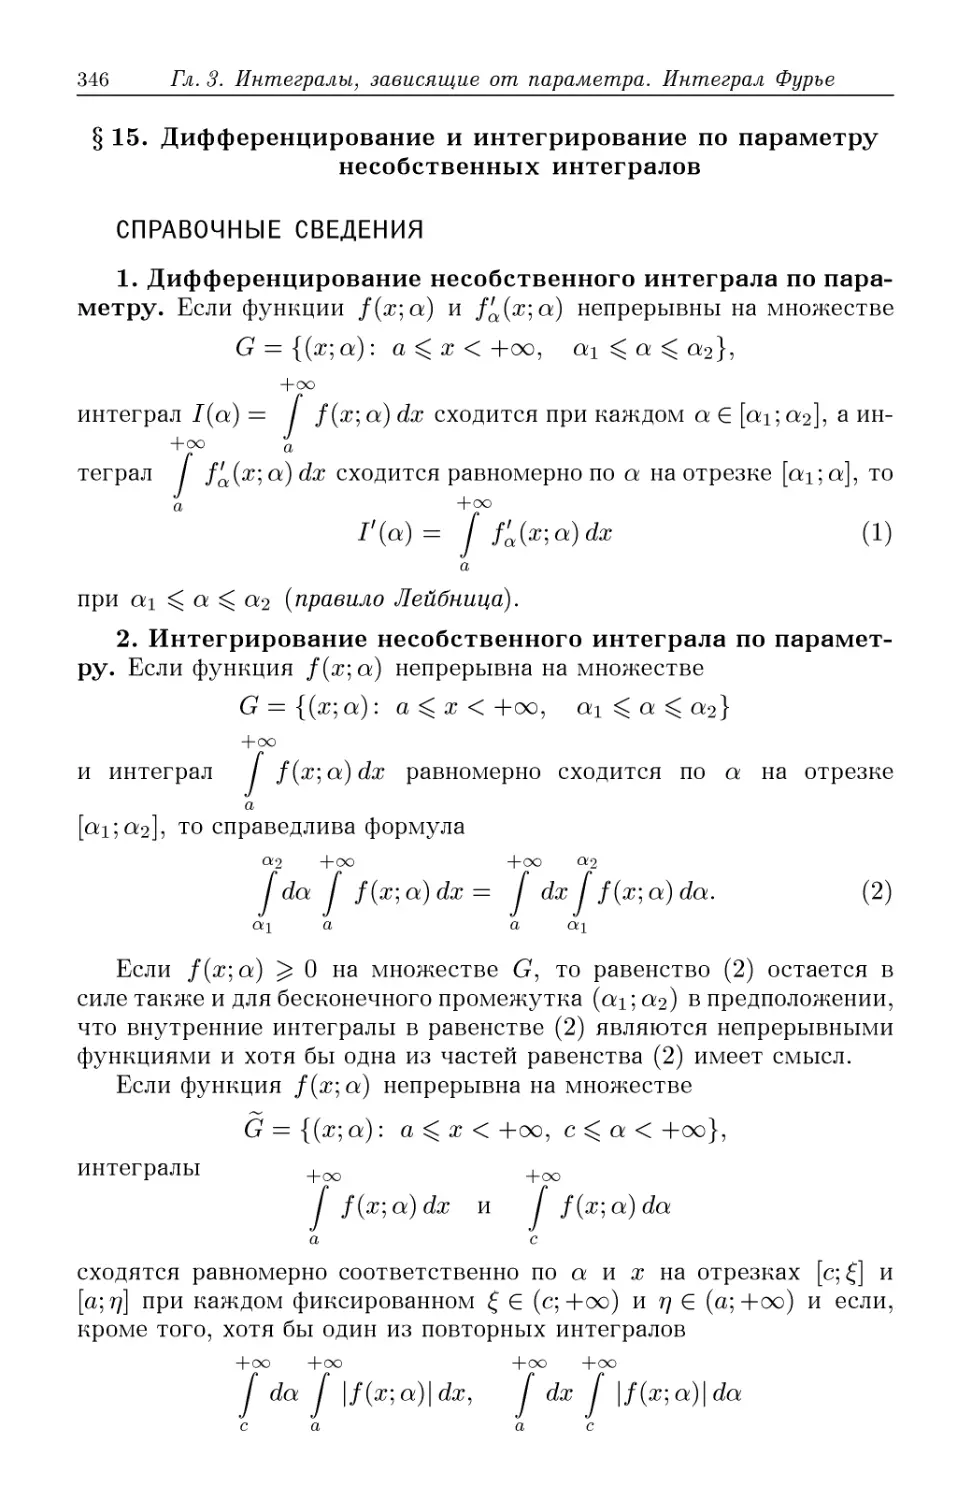 §15. Дифференцирование и интегрирование по параметру несобственных интегралов